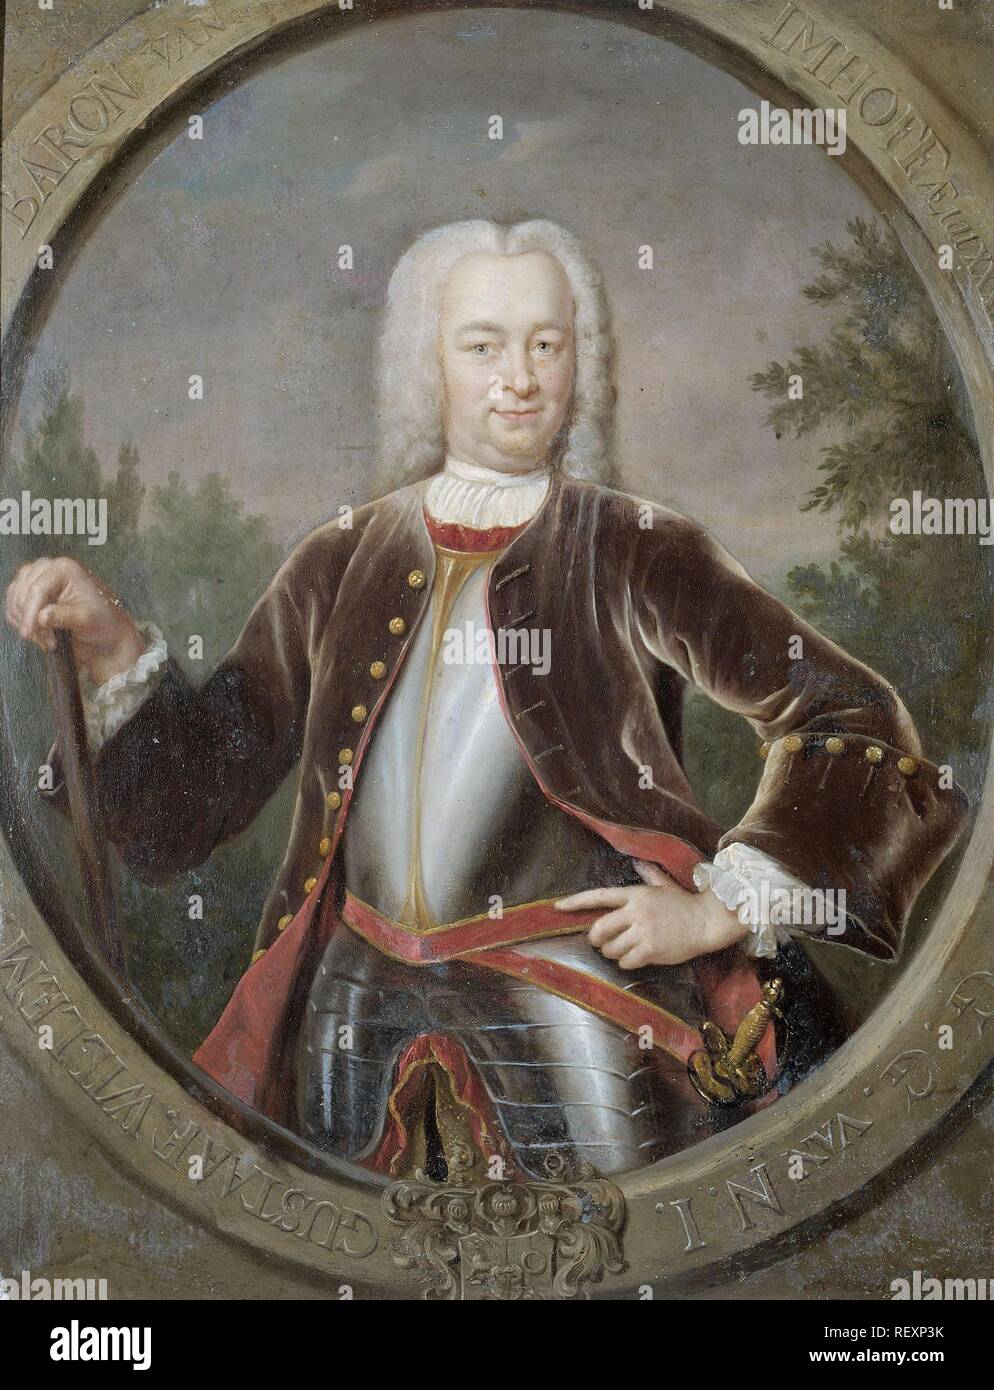 Portrait de Gustaaf Willem, Baron van Imhoff, Gouverneur général de la Dutch East India Company. Dating : 1742. Dimensions : H 34 cm × w 27 cm ; d 3.8 cm. Musée : Rijksmuseum, Amsterdam. Auteur : Jan Maurits Quinkhard. Banque D'Images